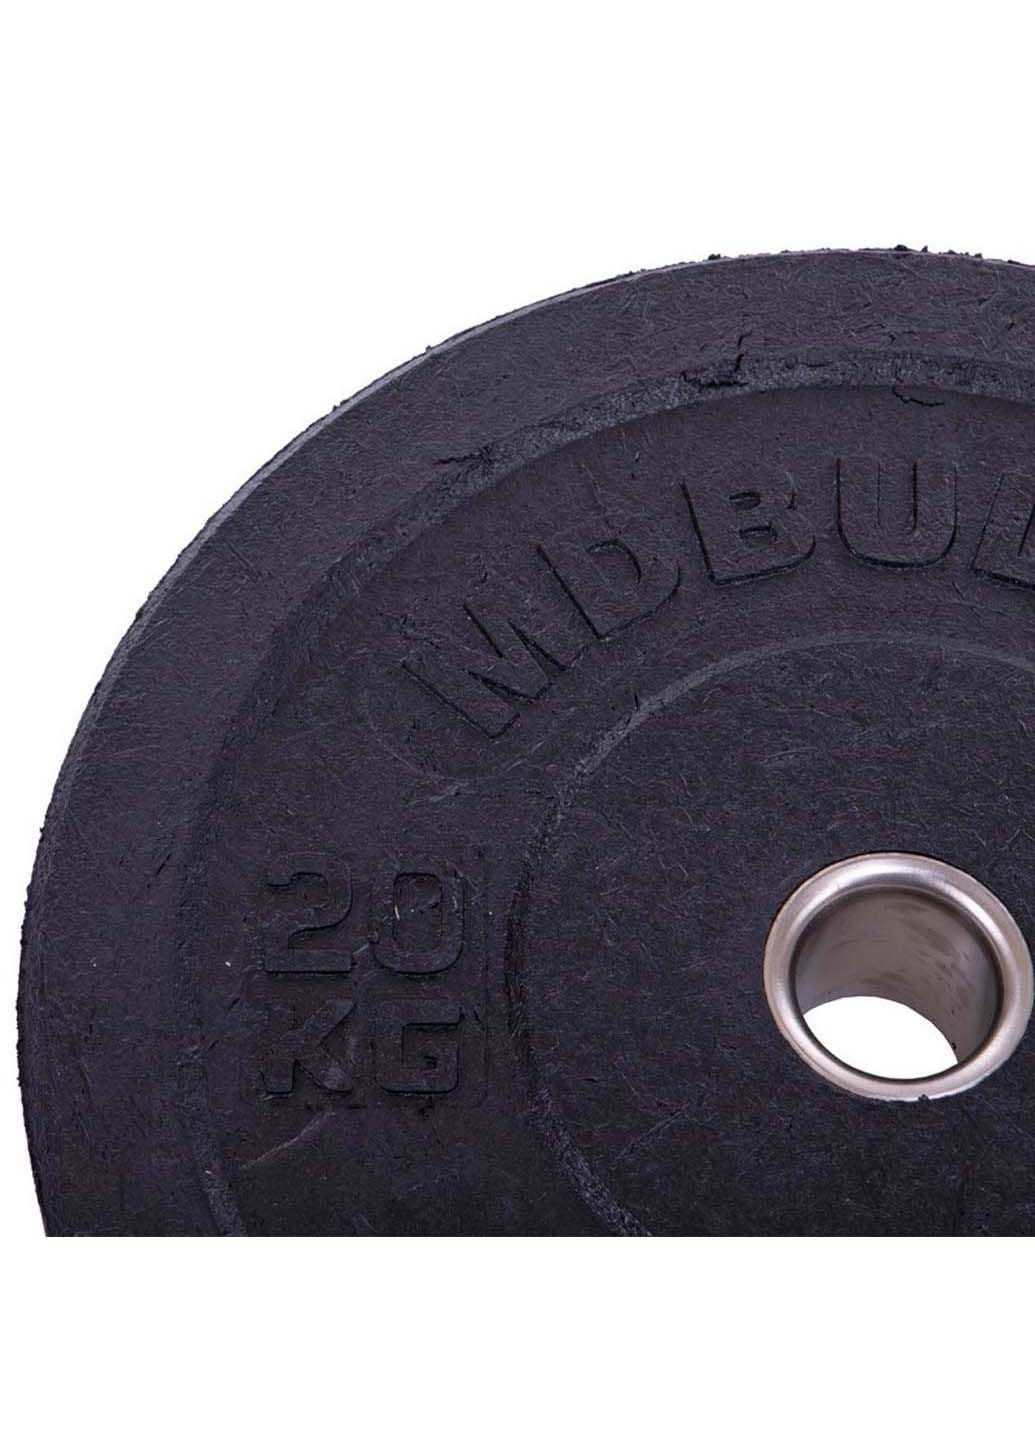 Блины диски бамперные для кроссфита Bumper Plates TA-2676 20 кг MDbuddy (286043746)